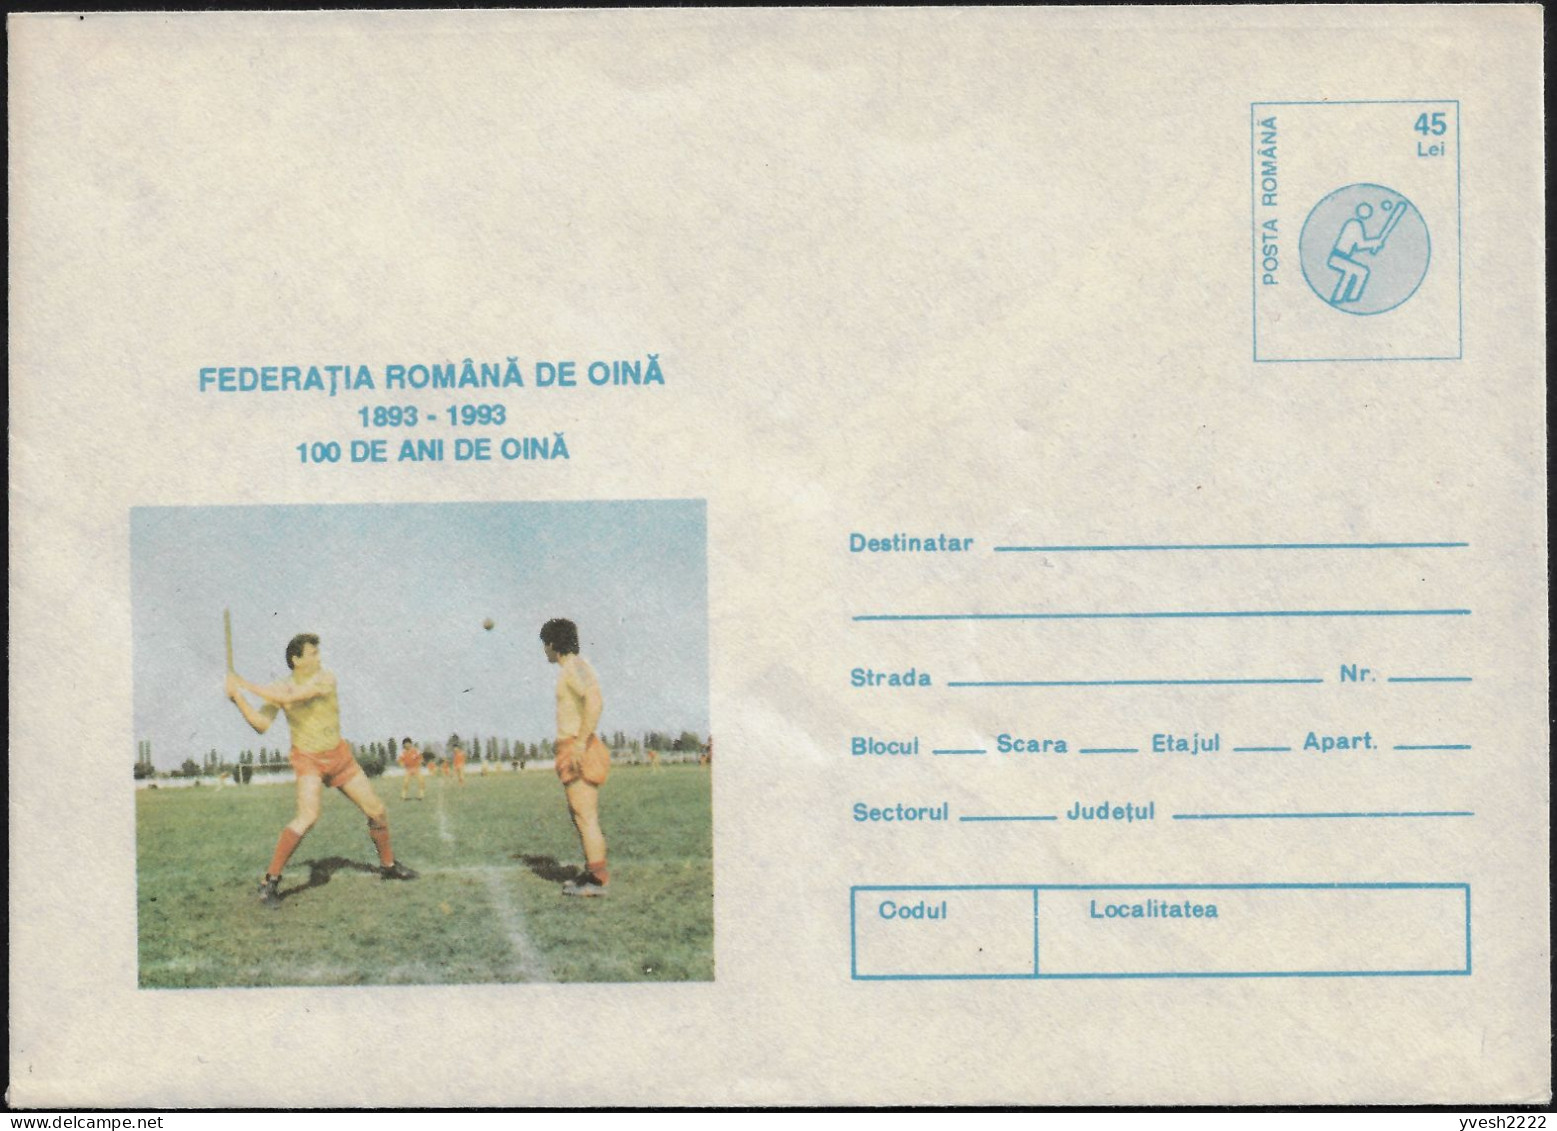 Roumanie 1993  Entier Postal Fédération Roumaine De Oină (histoire Du Base-ball) - Baseball